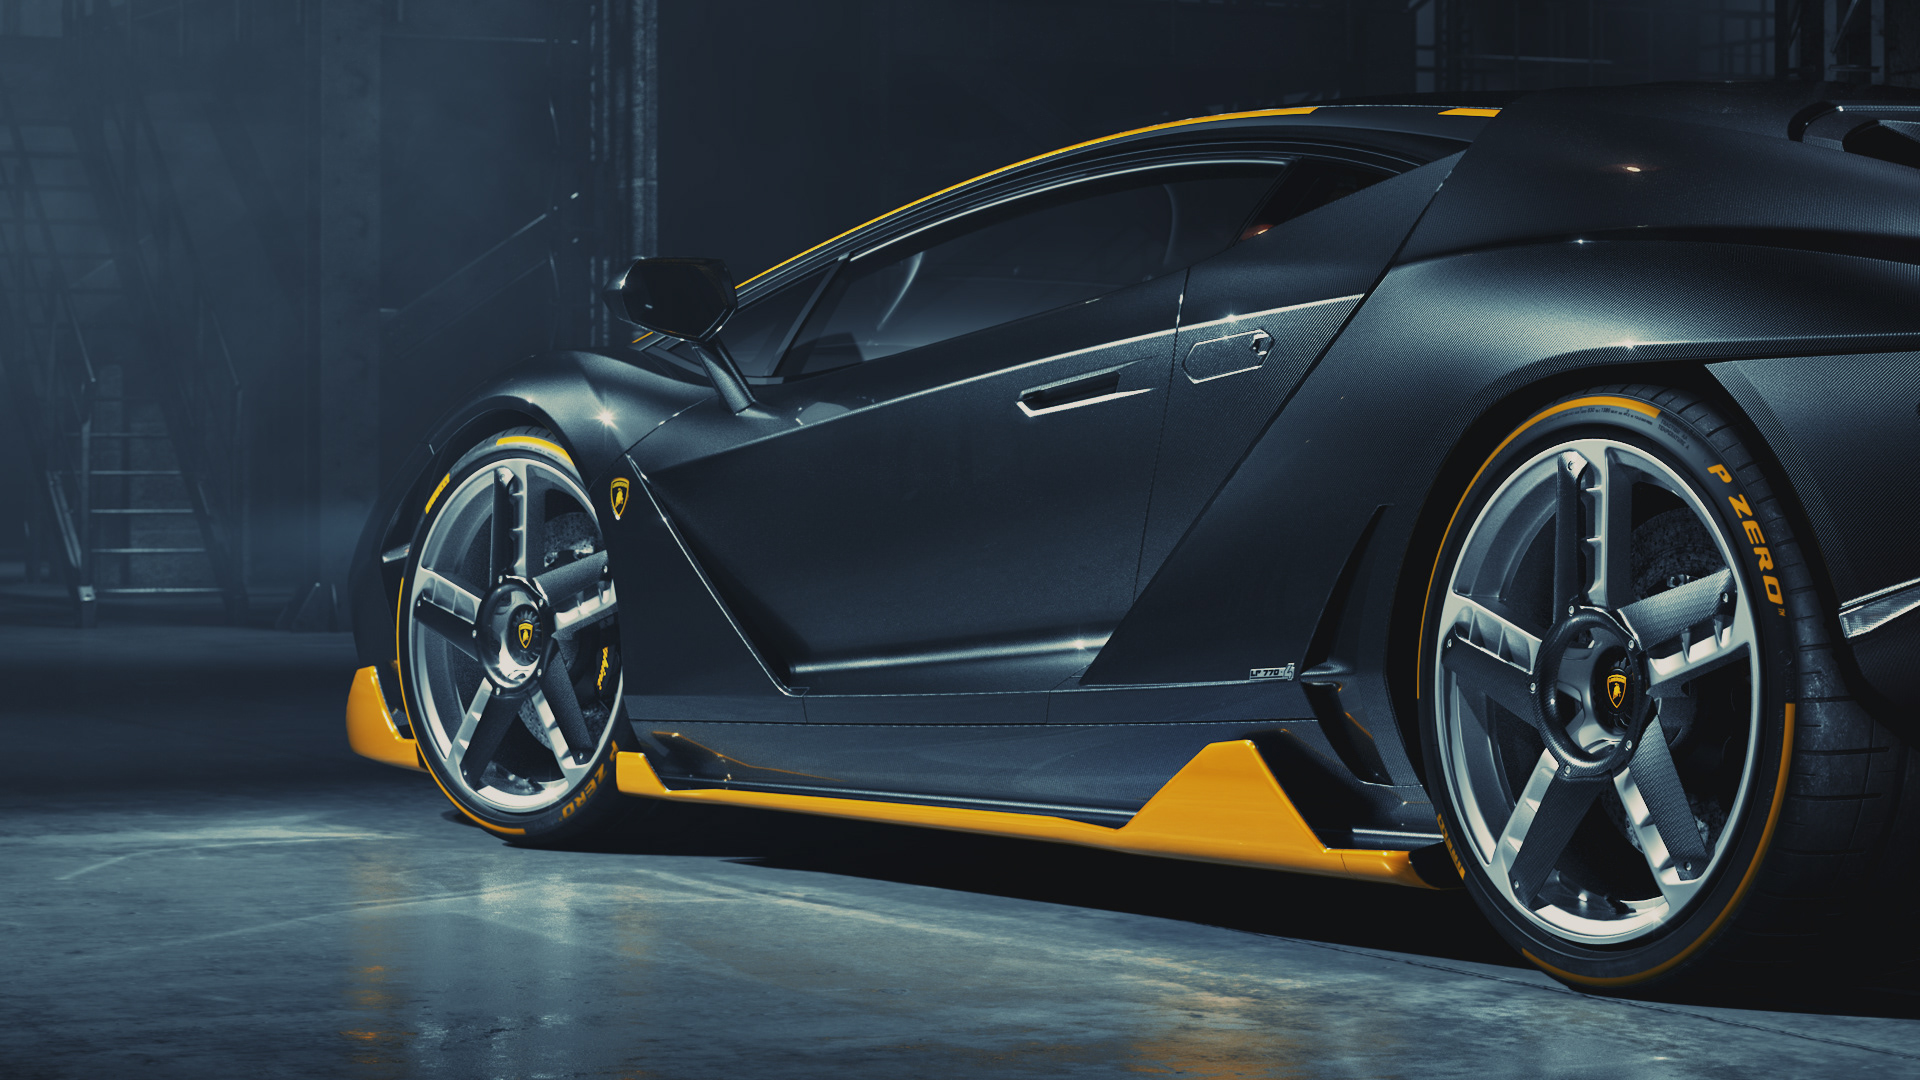 Lamborghini Centenario \u2013 Full CGI on Behance39f90d91477621.5e32d3fdb86b5.jpg